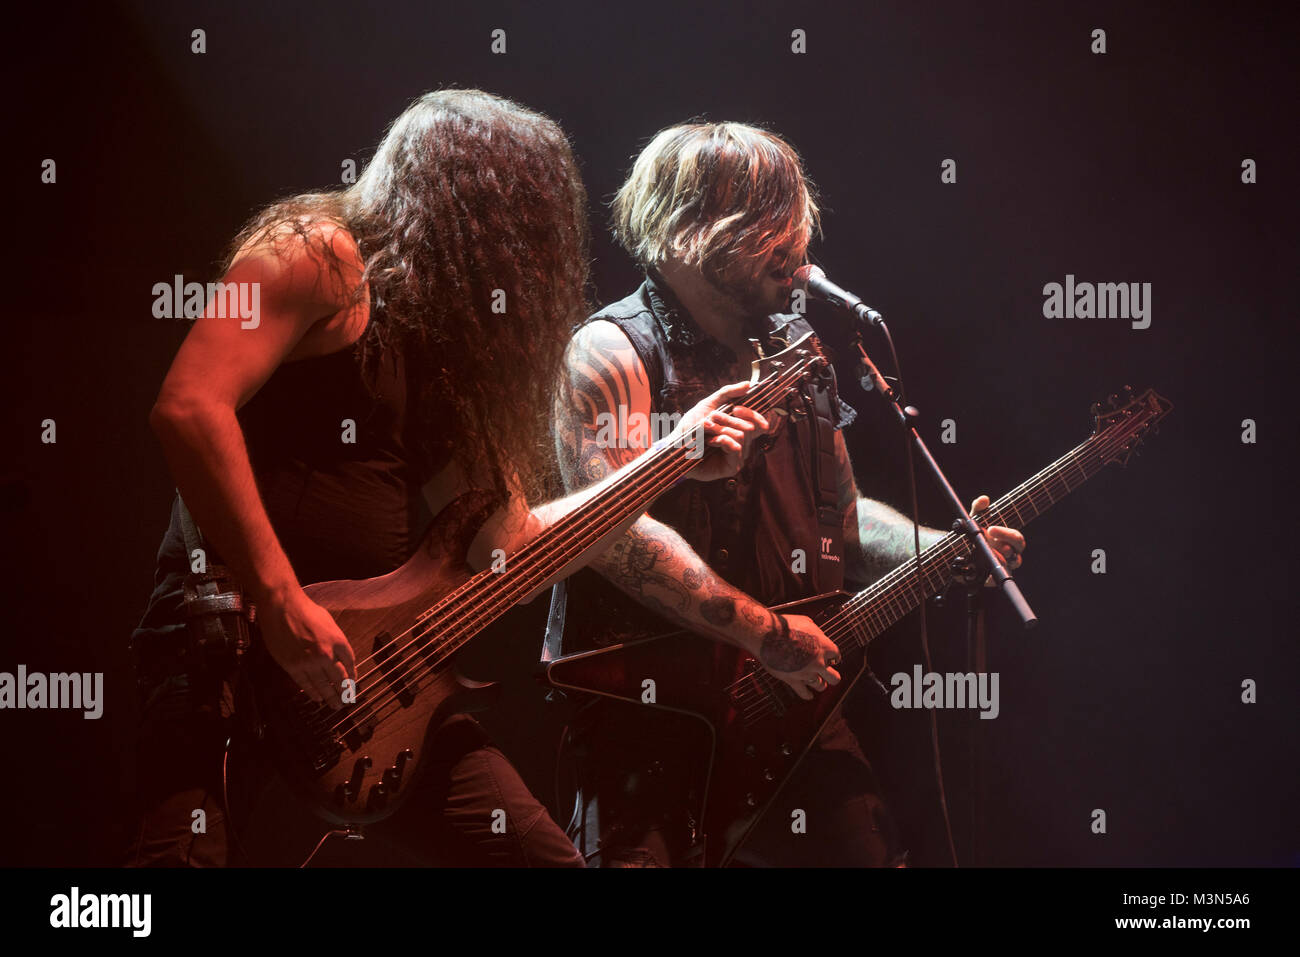 Die Mannheimer Metal-Band sinfonica oltre il nero spielte als Vorband beim Scorpions-Konzert in der Festhalle. Foto Stock